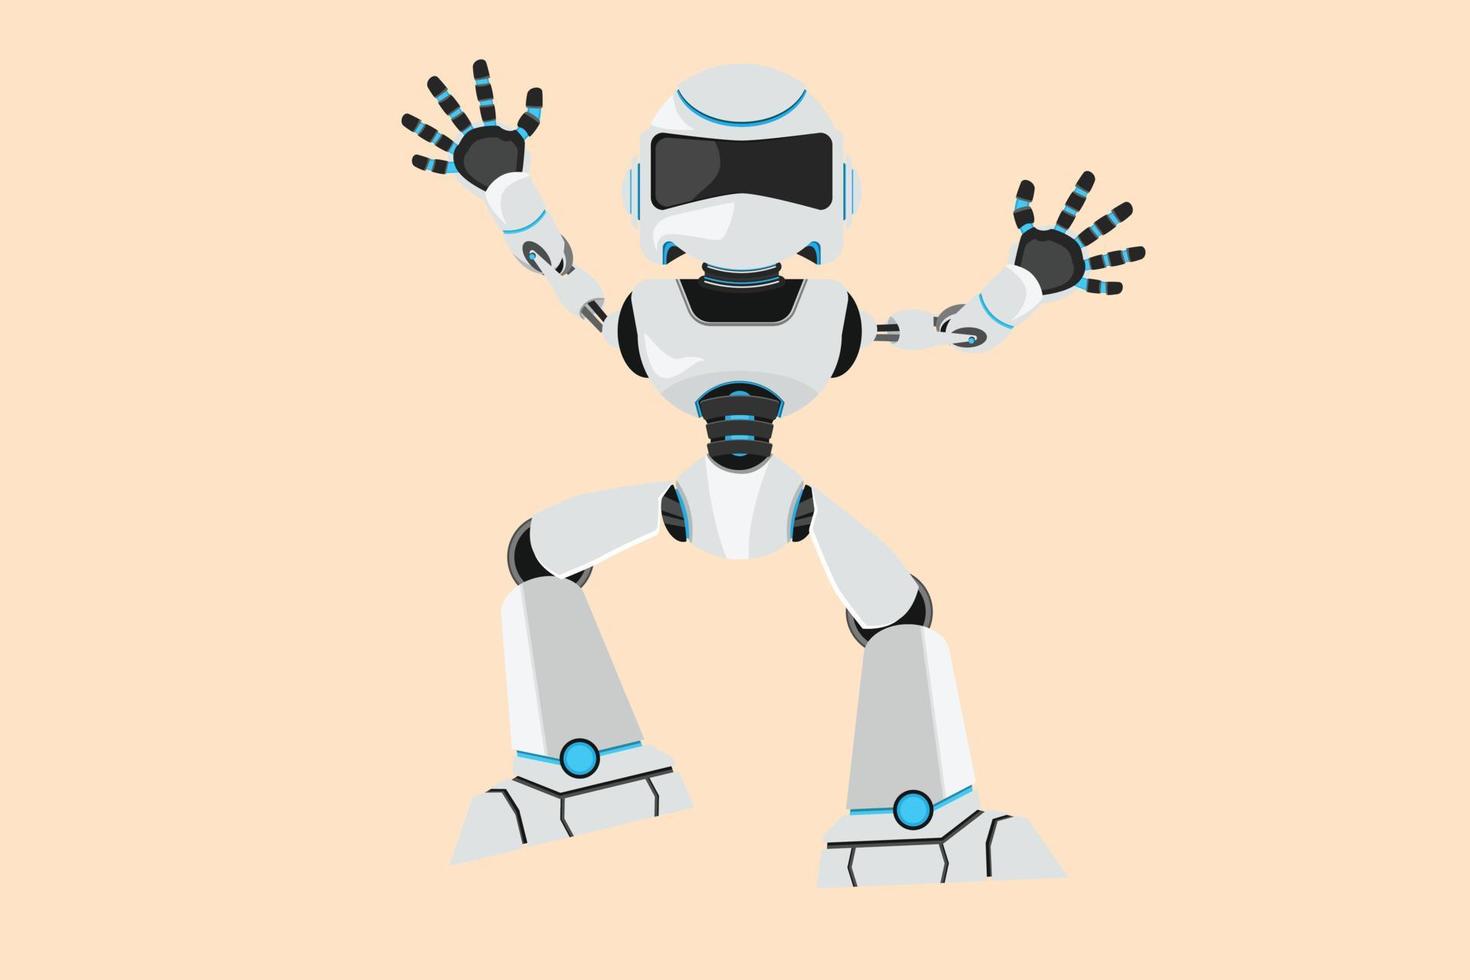 il disegno di affari che disegna il robot felice salta con entrambe le mani alzate. sviluppo futuro della tecnologia robotica. intelligenza artificiale e processi di machine learning. illustrazione vettoriale in stile cartone animato piatto